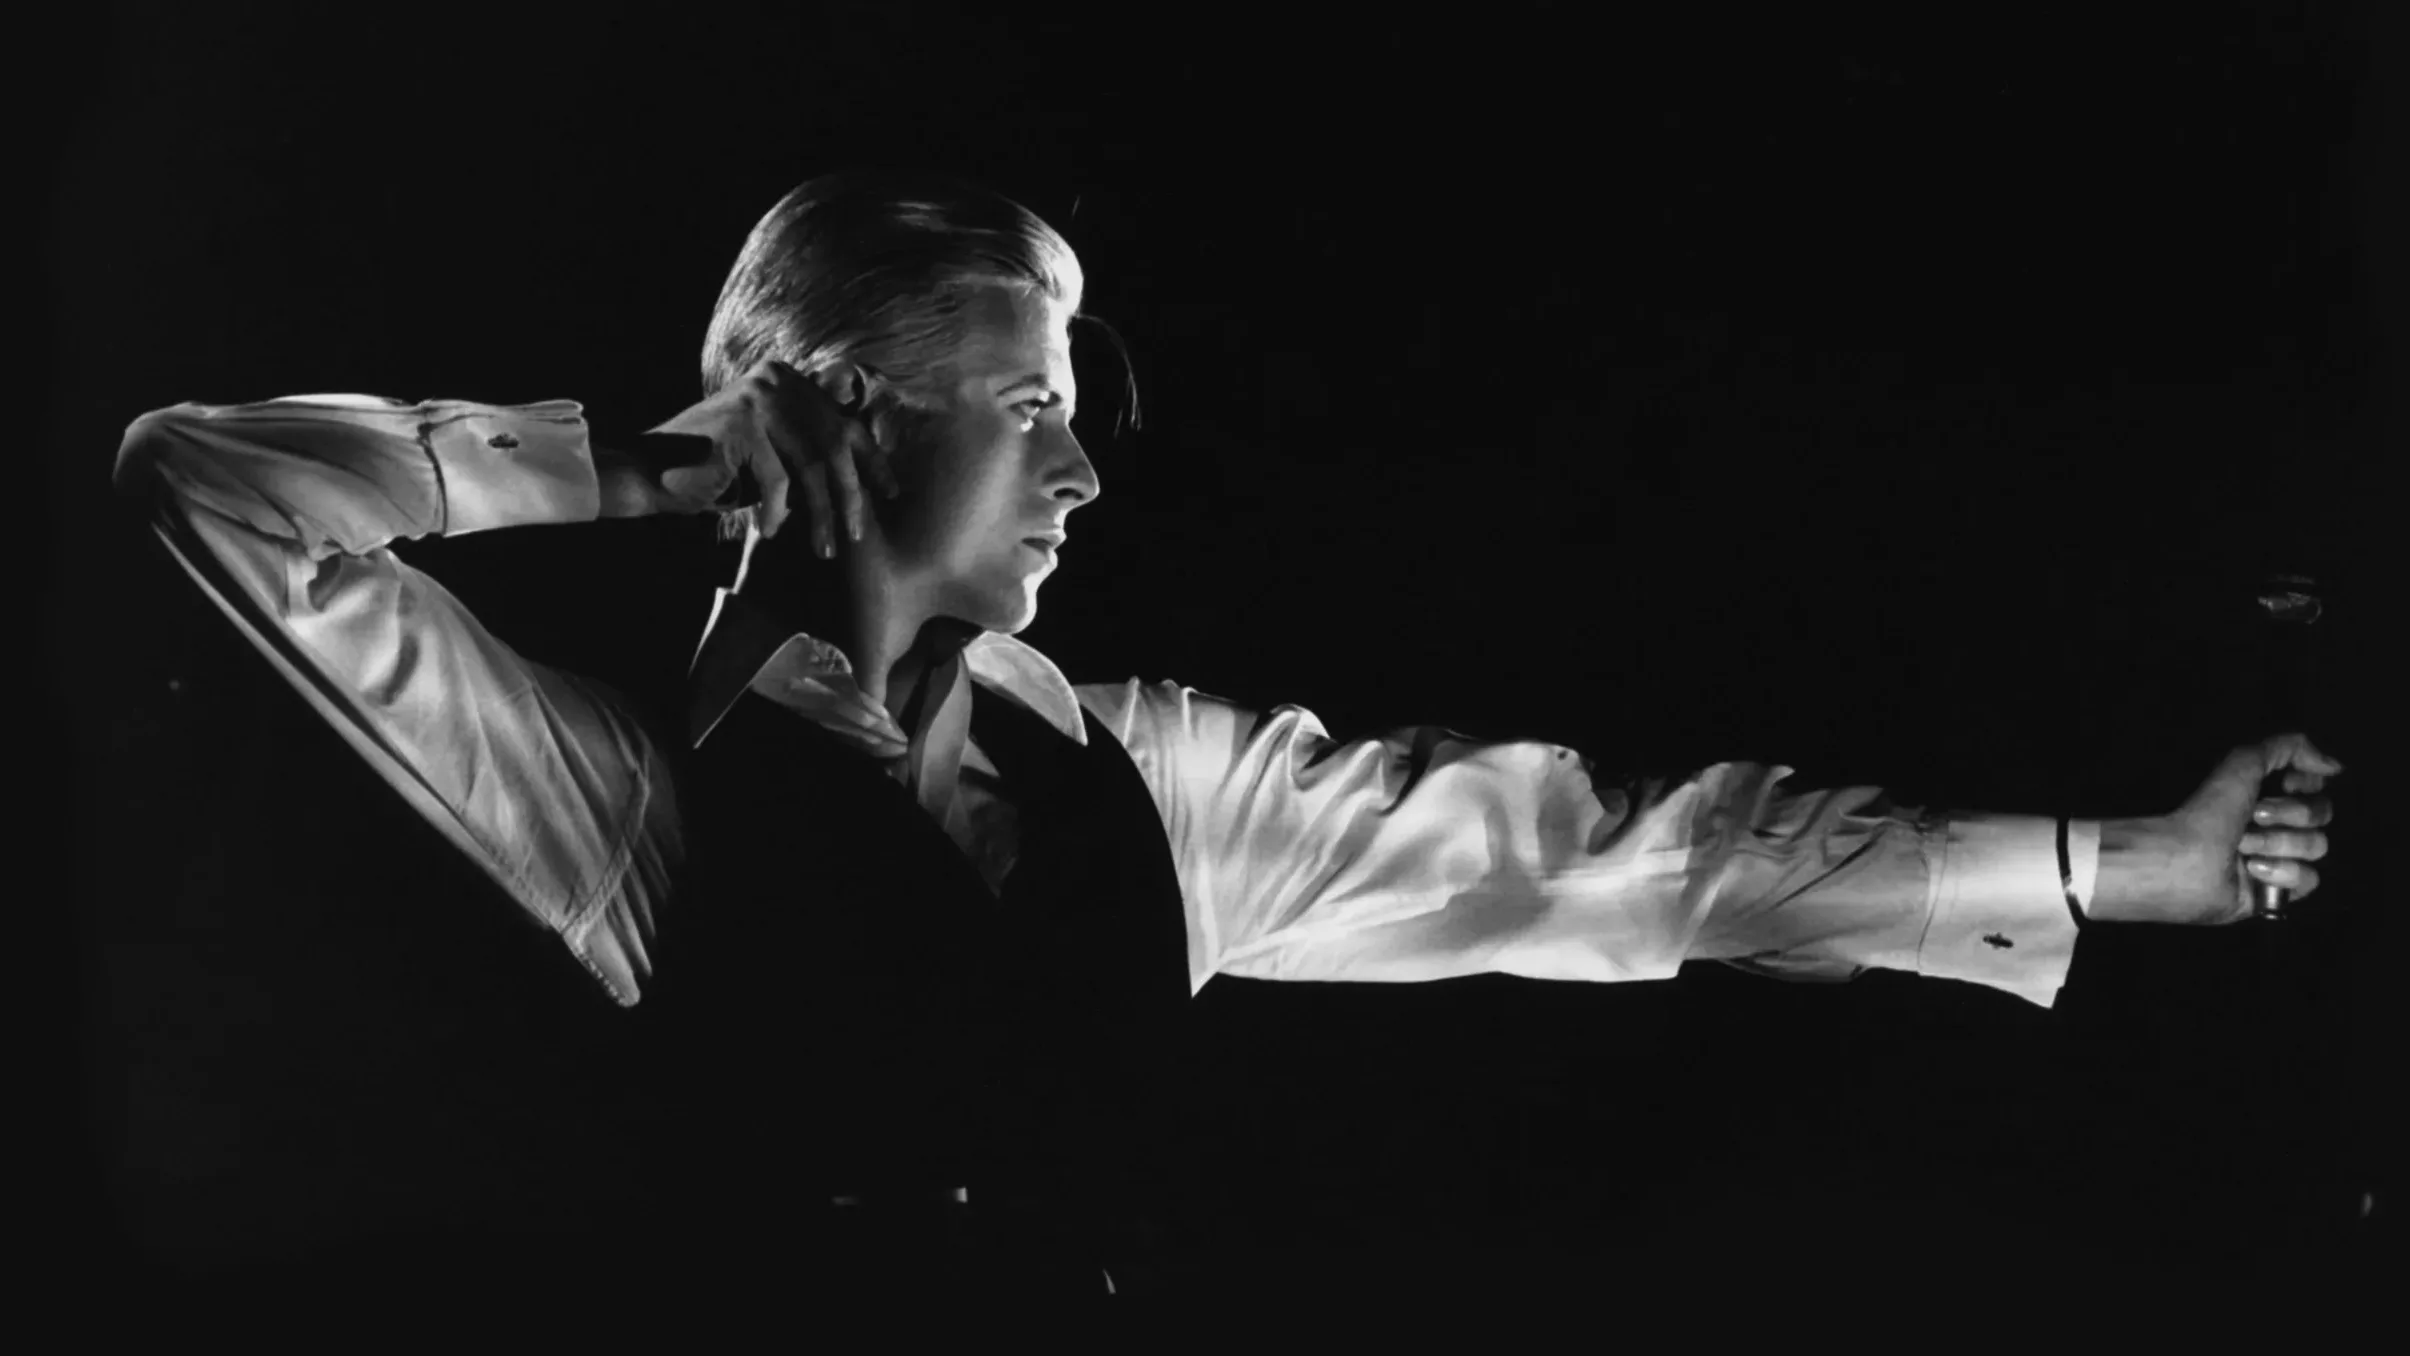 David Bowie e a Inspiração para o alter ego The Thin White Duke